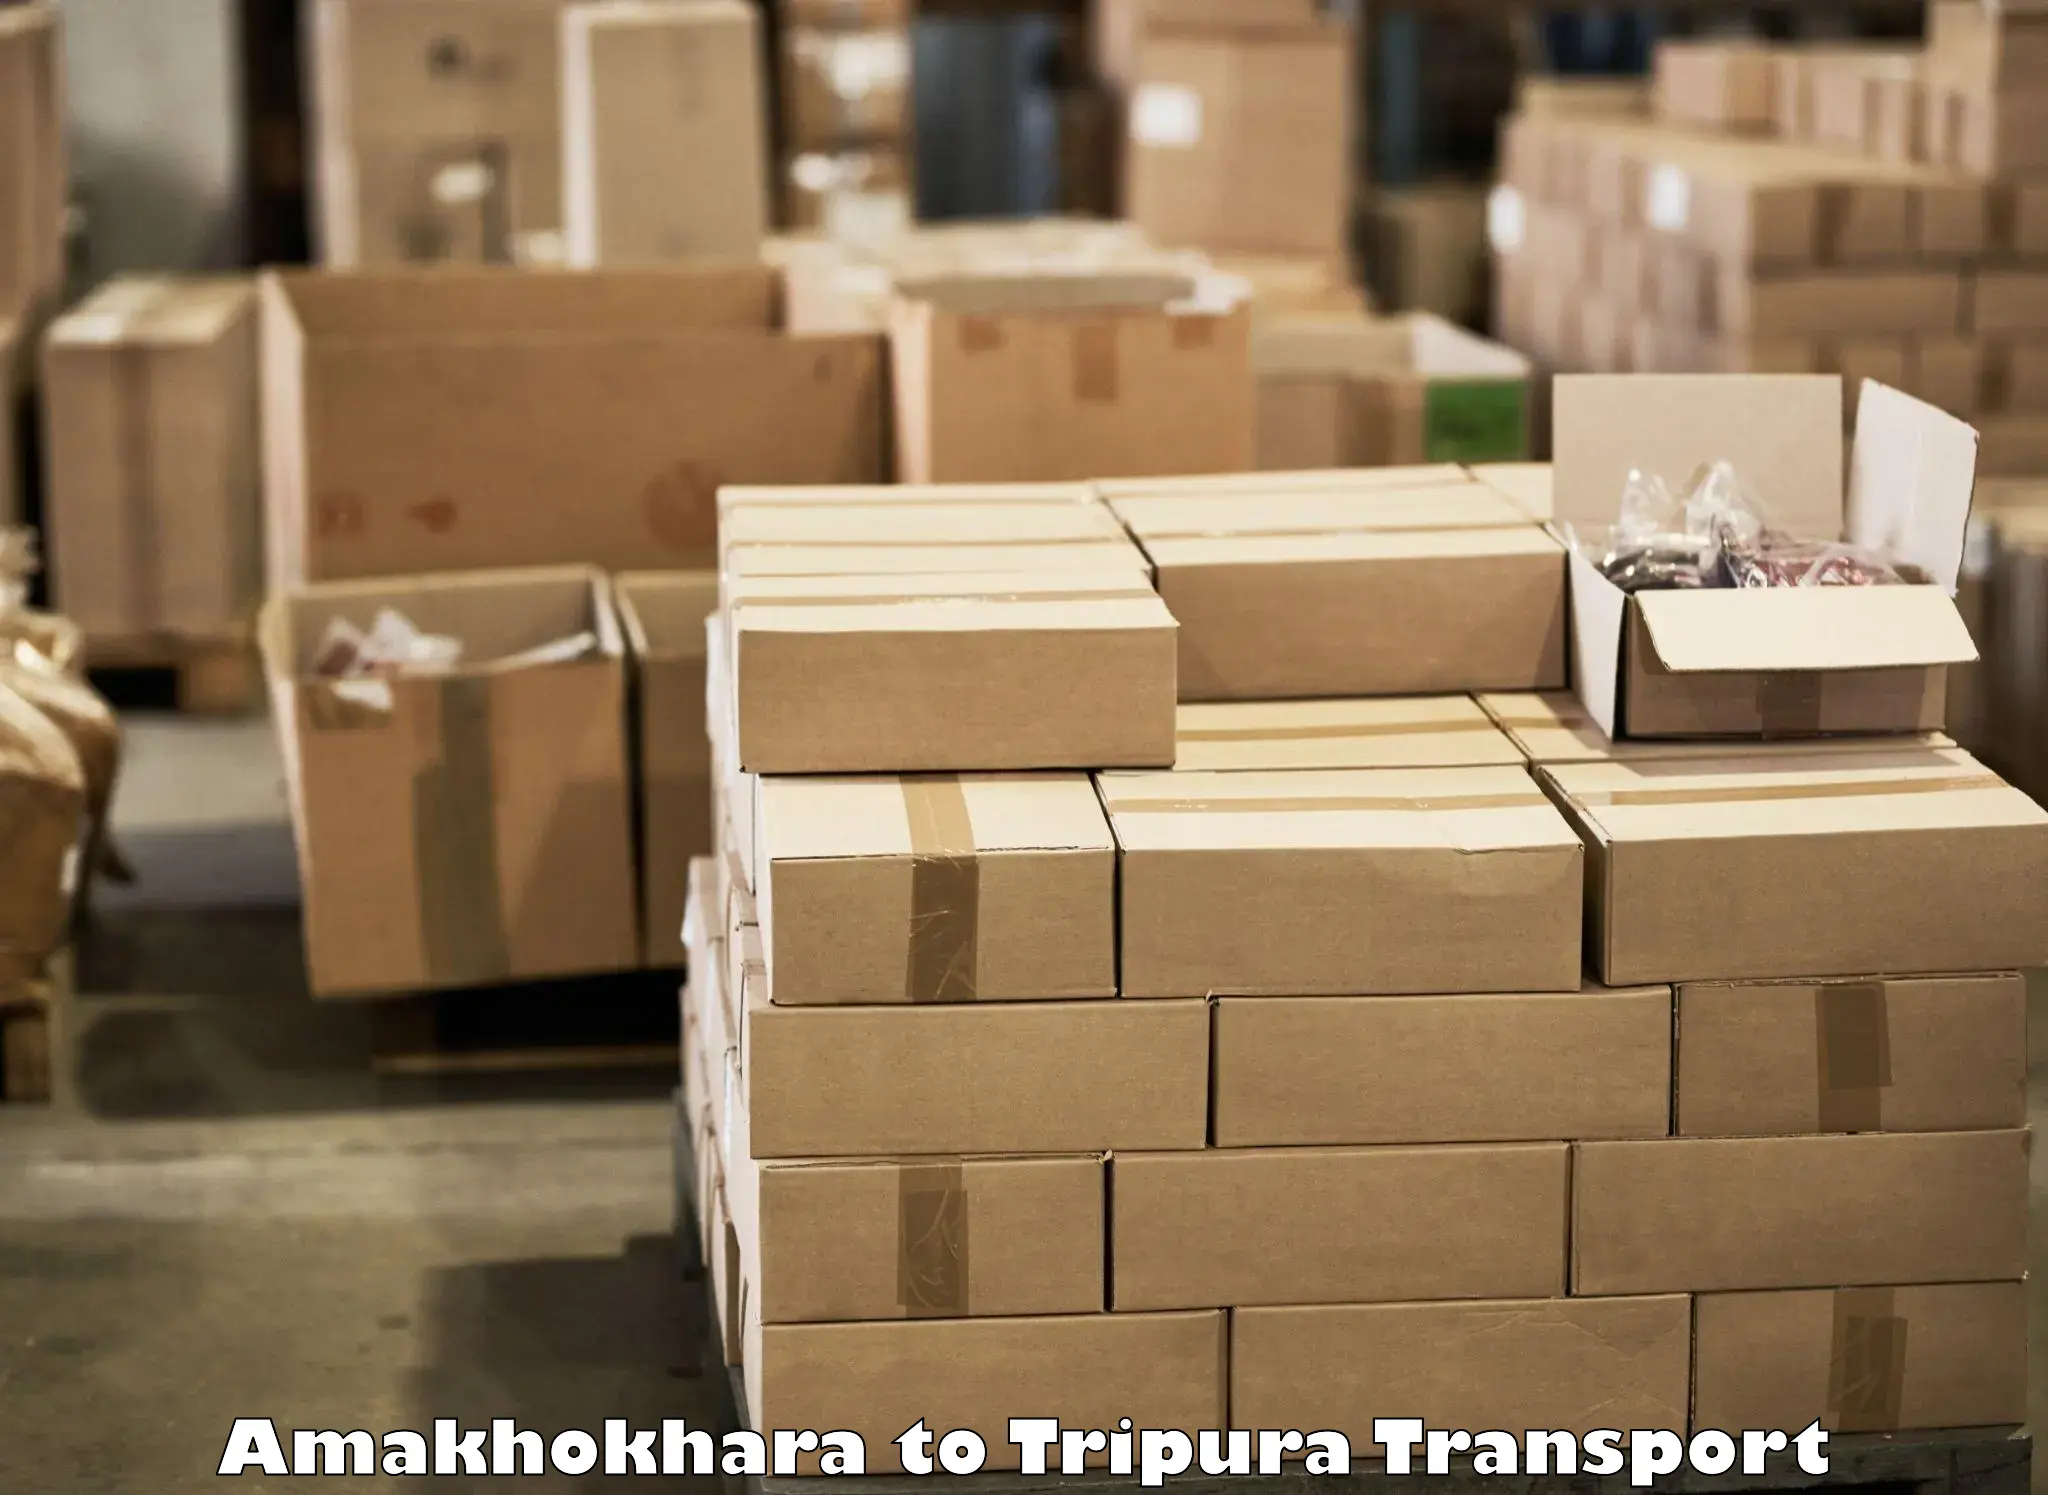 Goods transport services Amakhokhara to Kailashahar